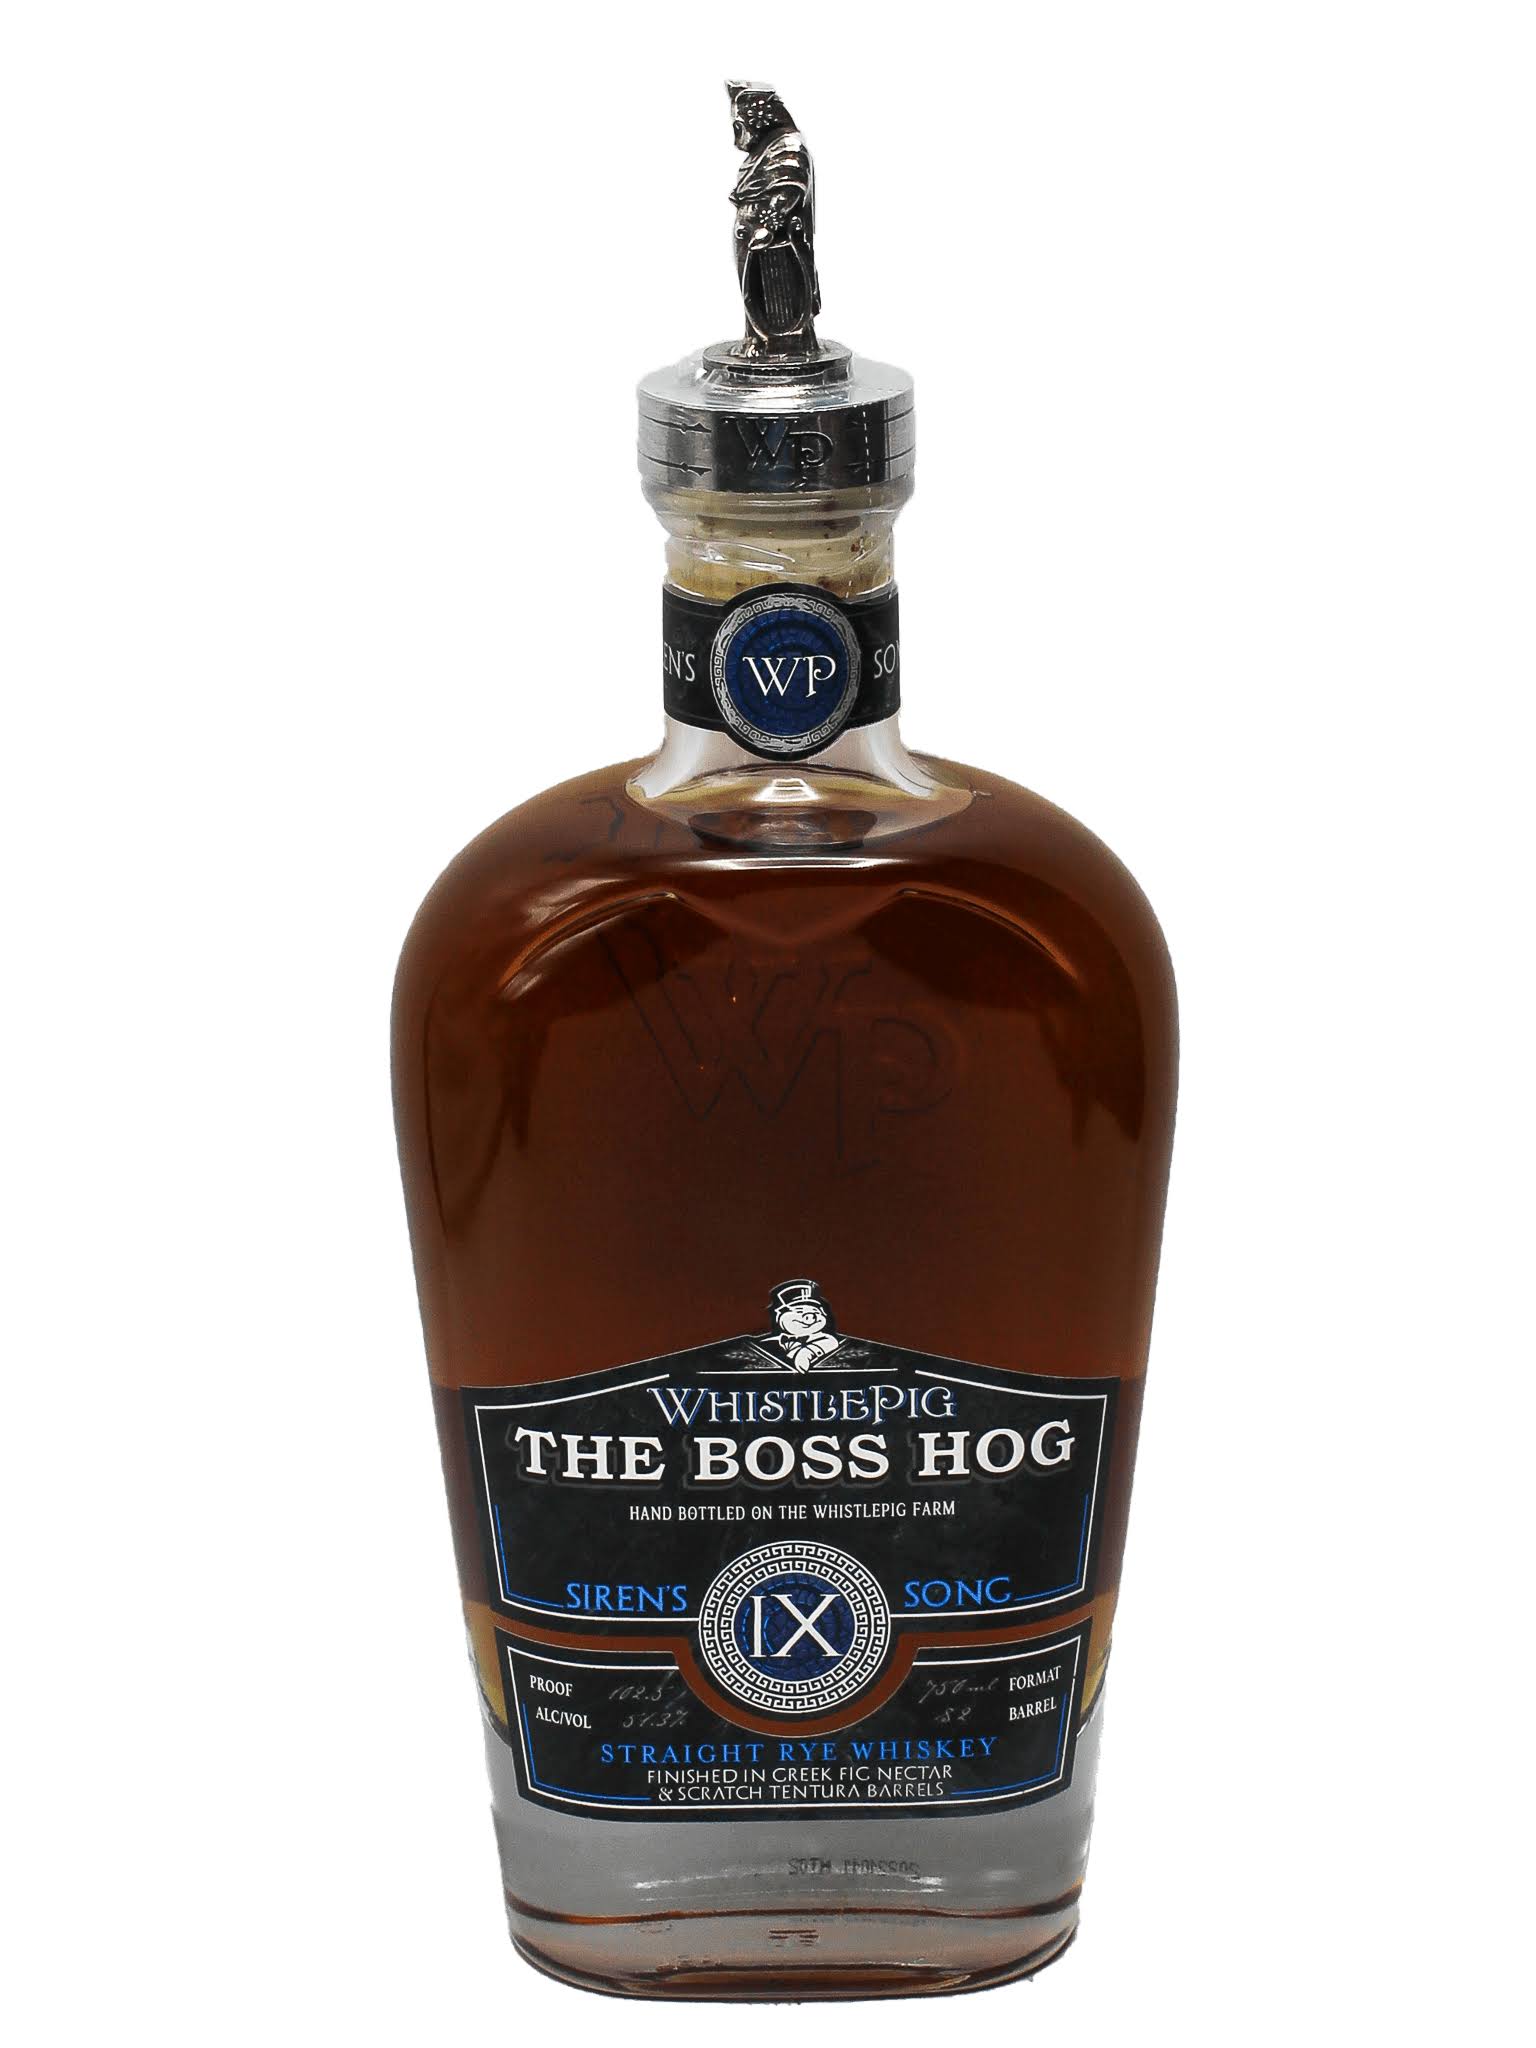 WhistlePig 'The Boss Hog Siren's IX Song' Straight Rye Whiskey 750ml